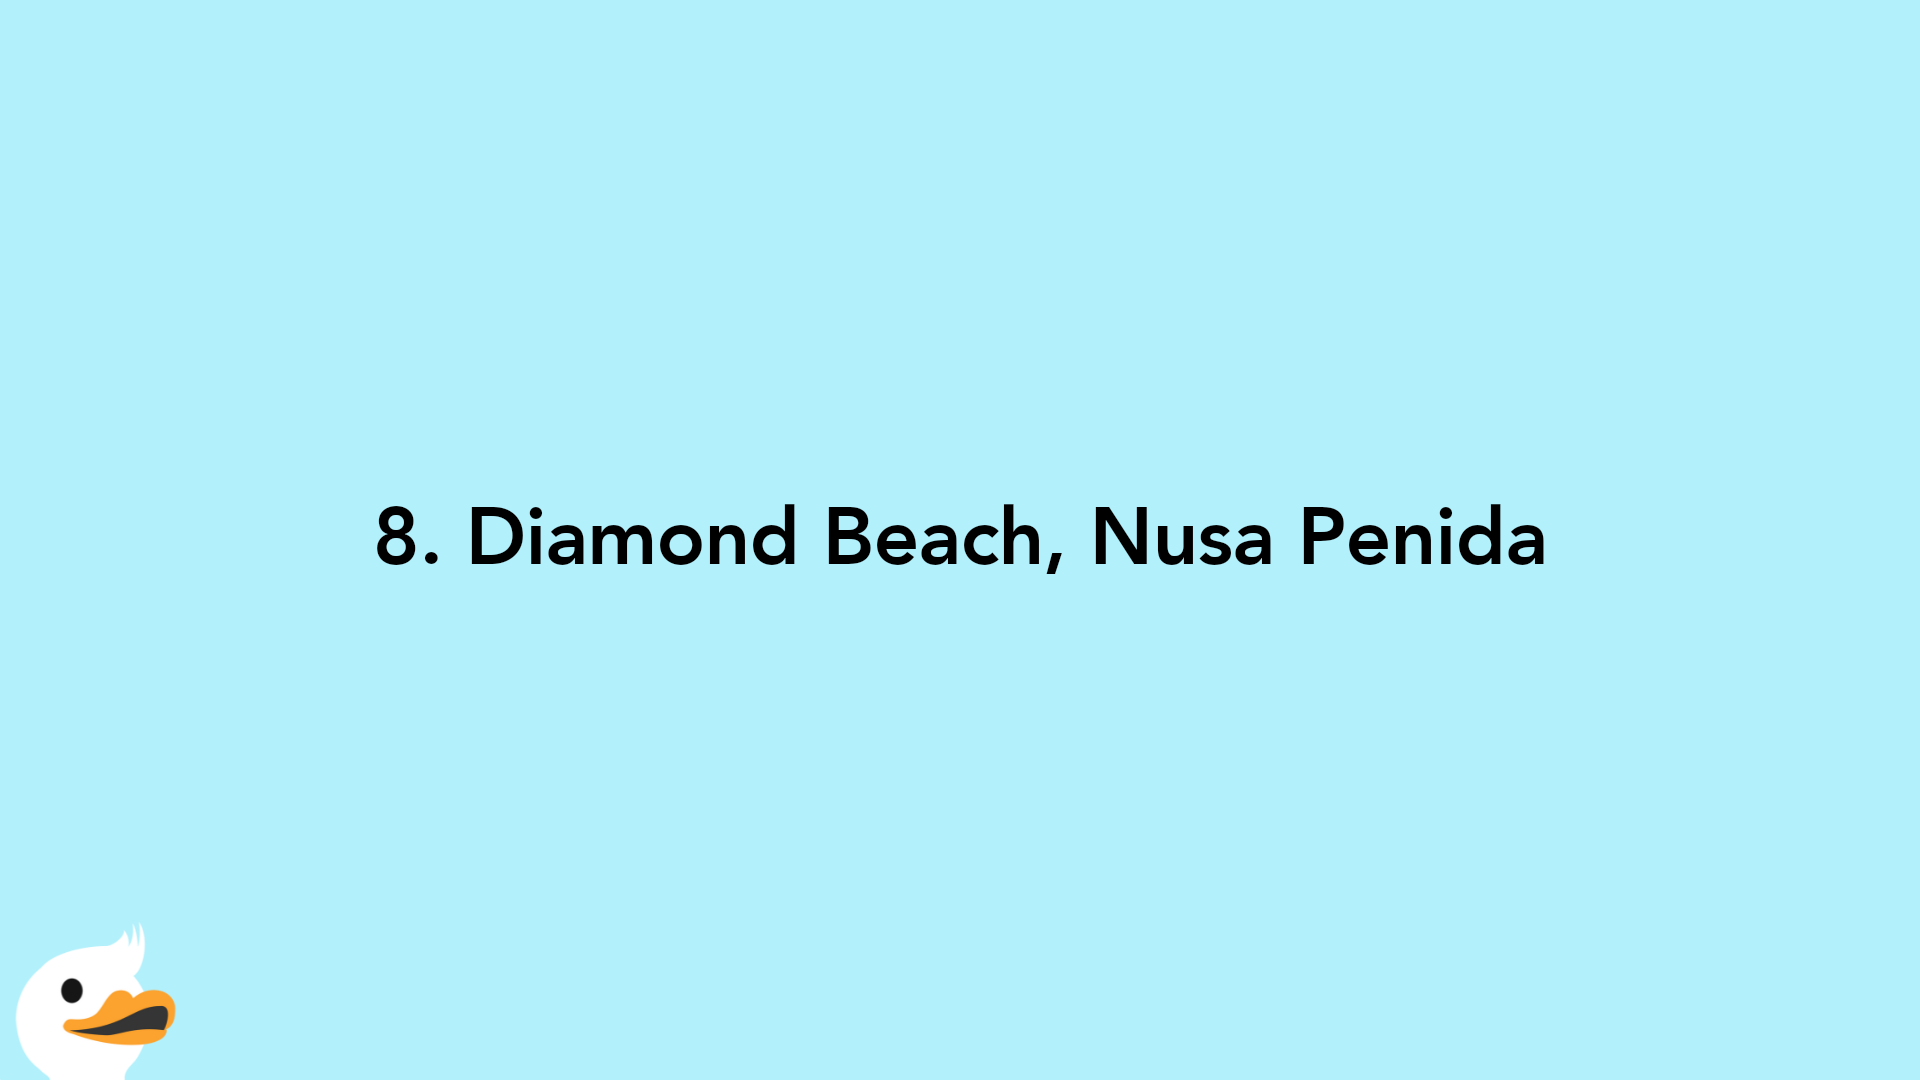 8. Diamond Beach, Nusa Penida